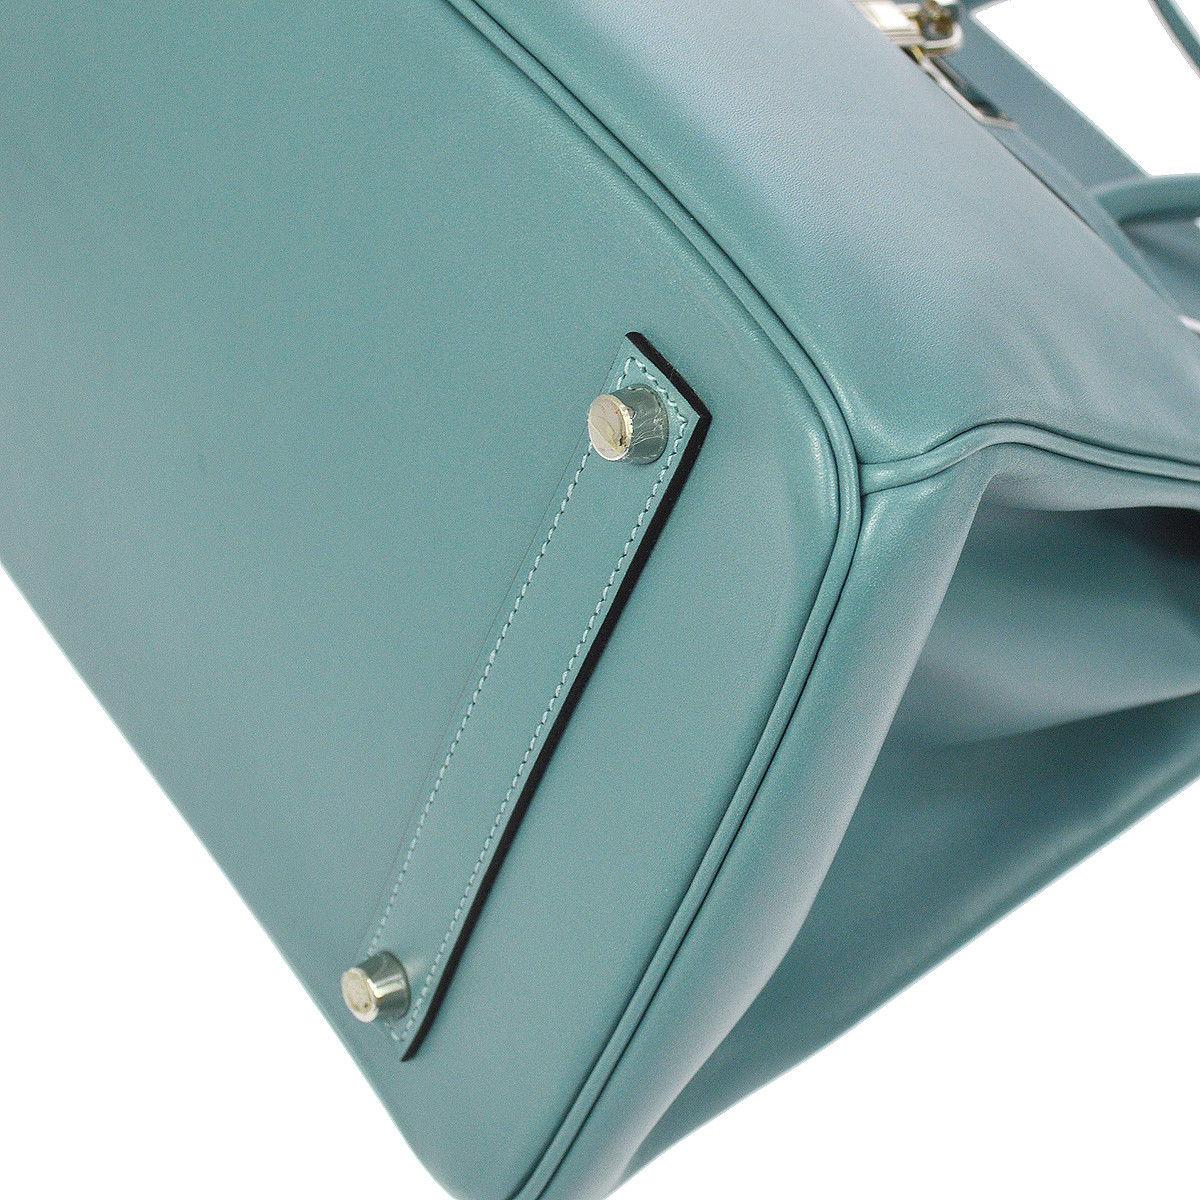 Hermes Birkin 35 Tiffany Blue Leather Top Handle Satchel Travel Shoulder Bag 1